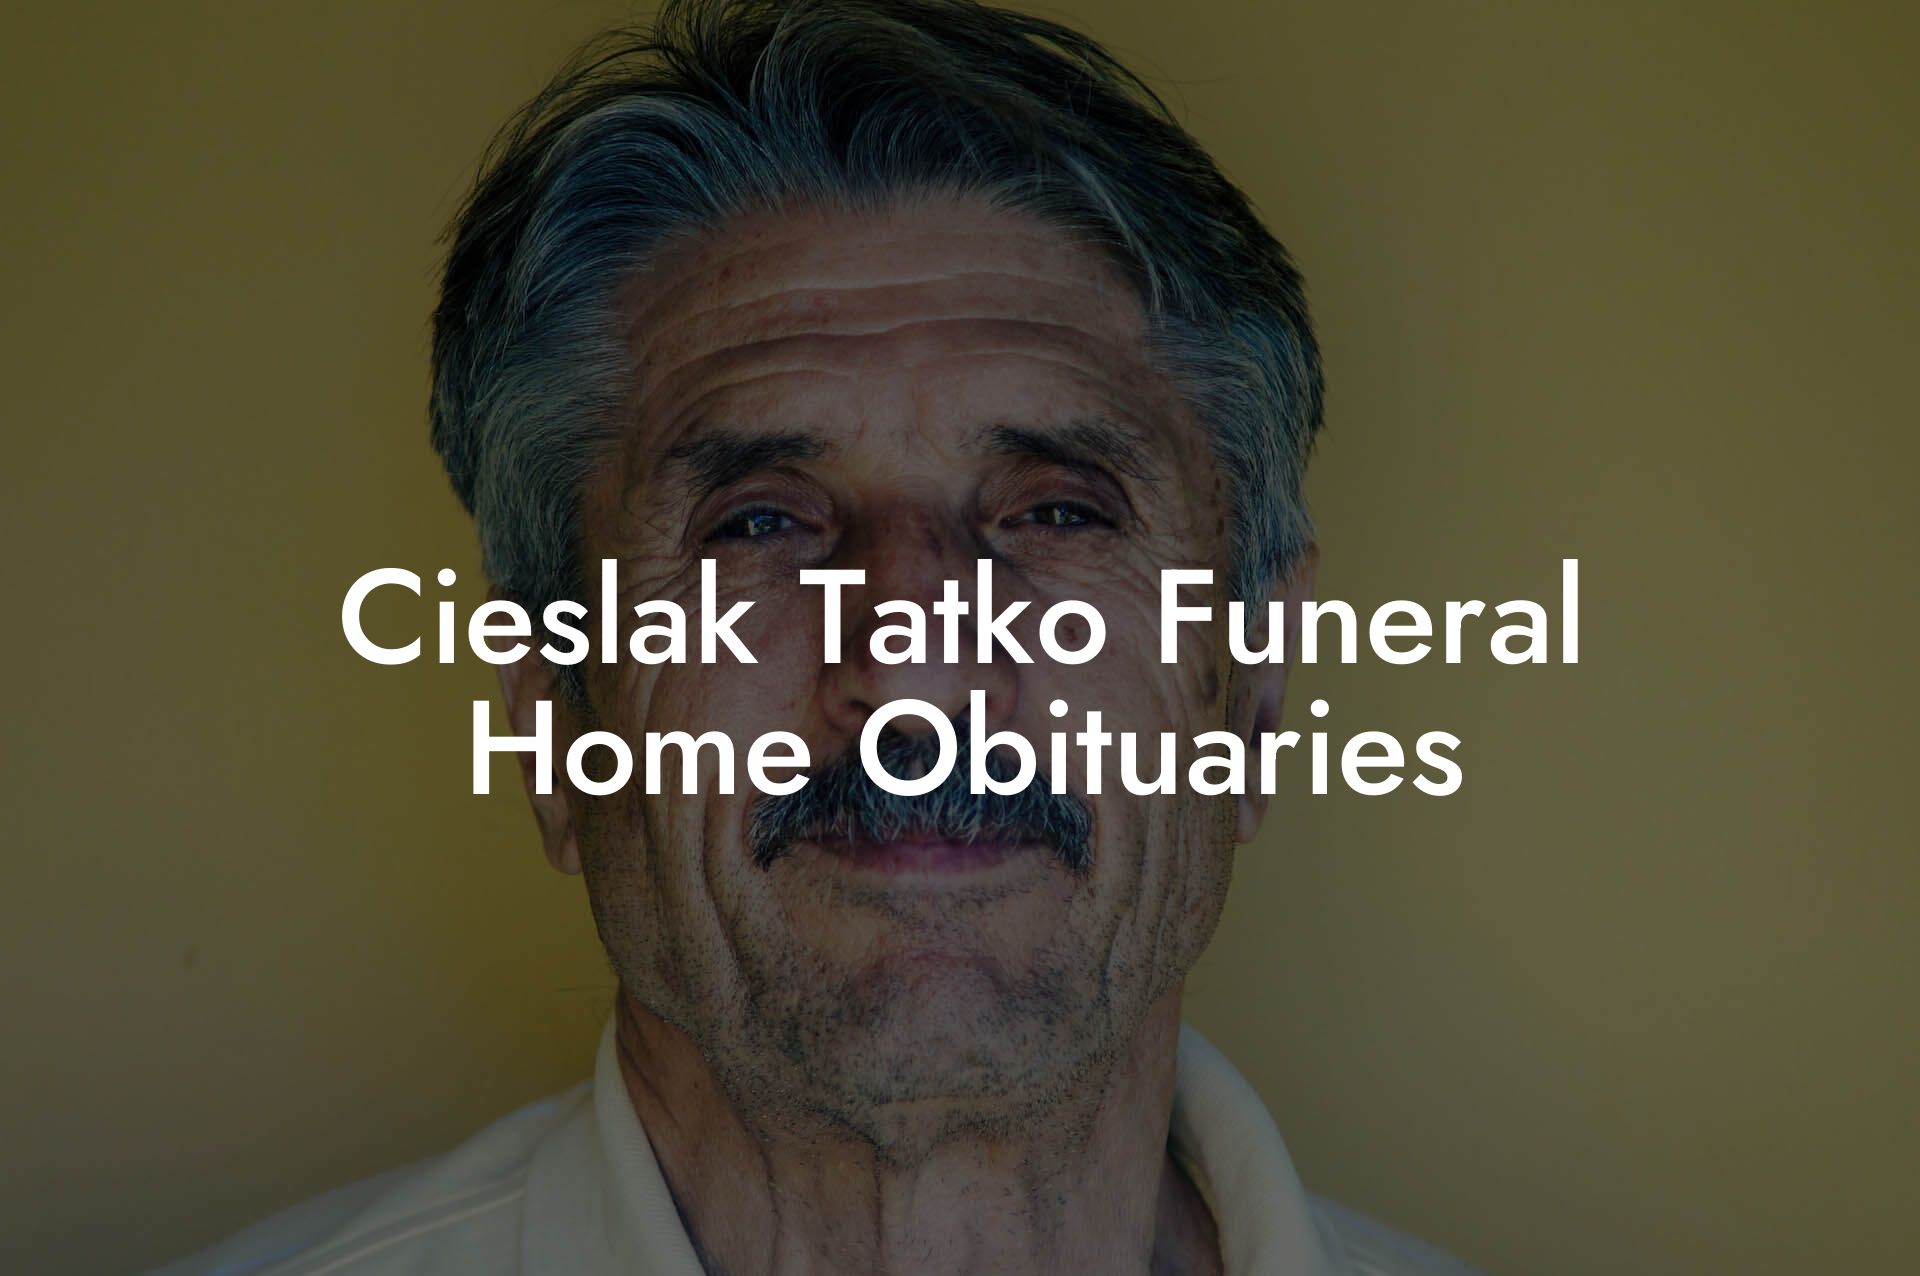 Cieslak Tatko Funeral Home Obituaries